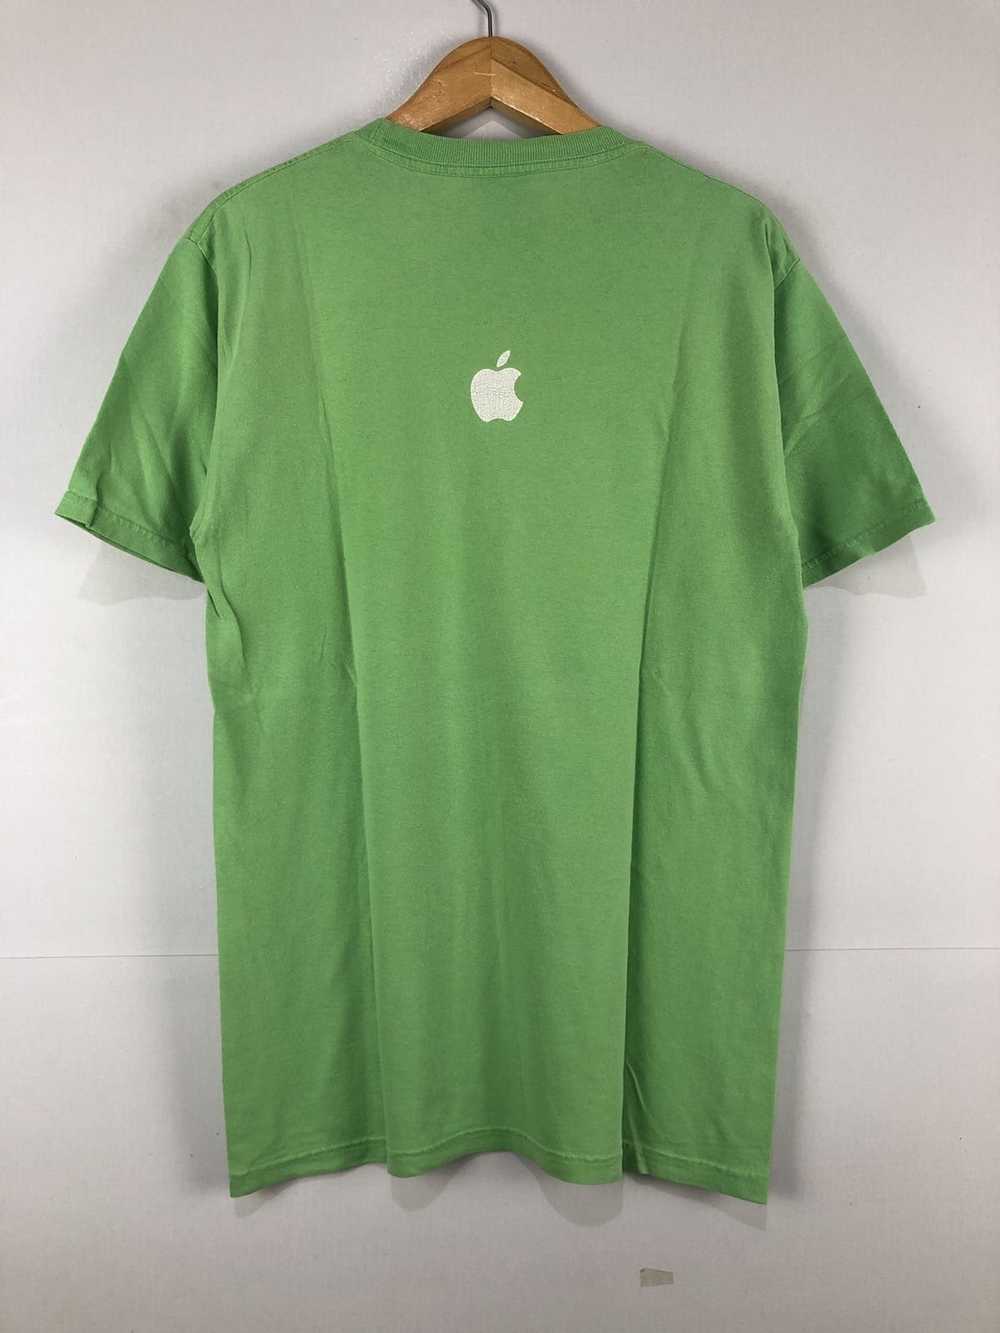 Apple Vintage Apple T-Shirt - image 3